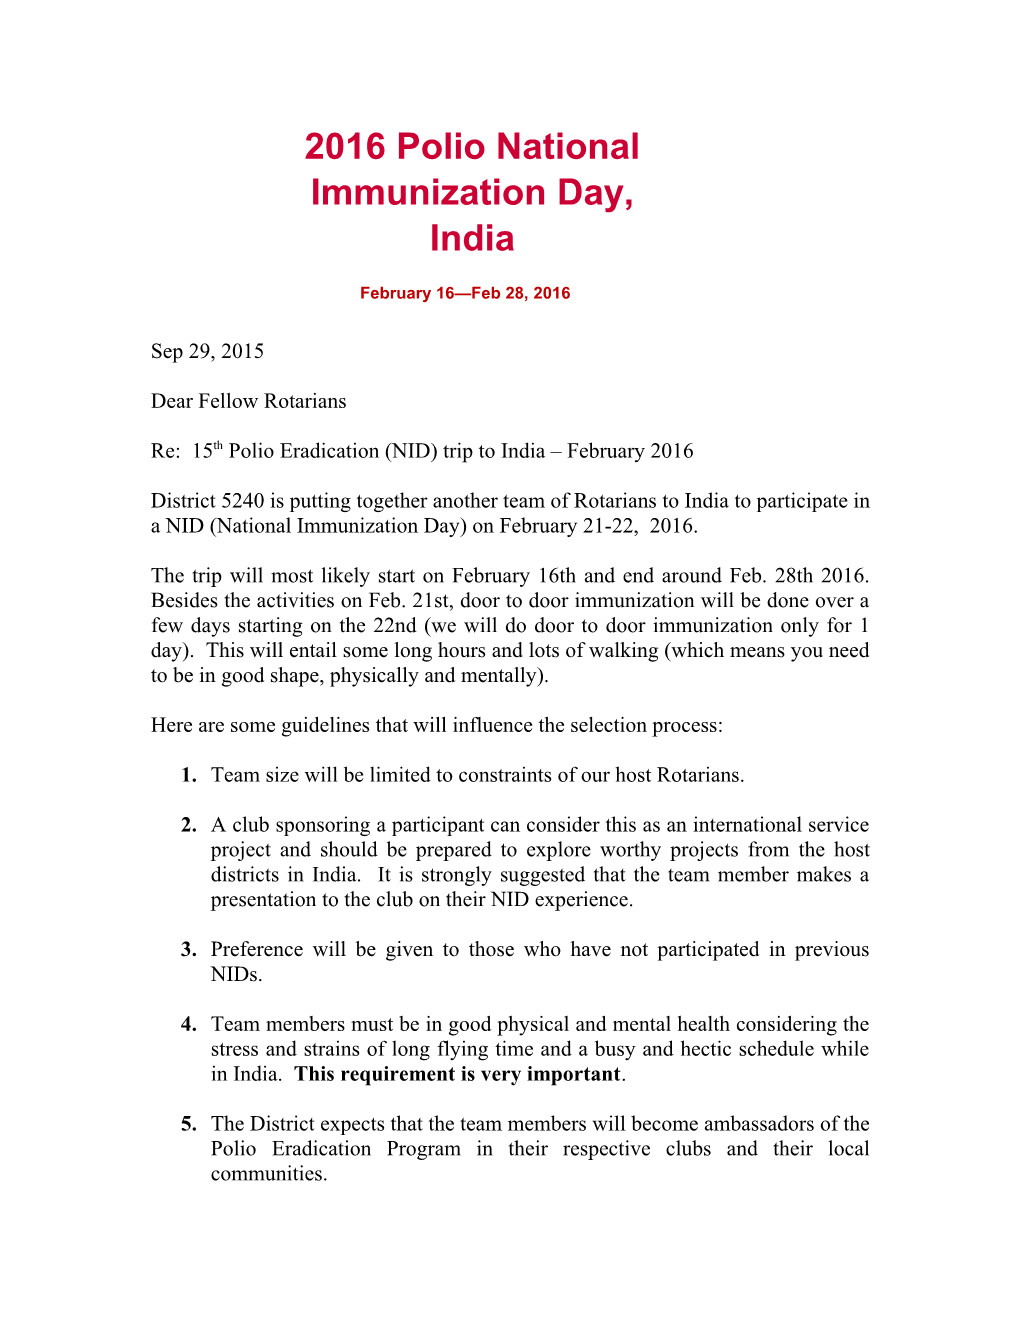 2016 Polio National Immunization Day, India